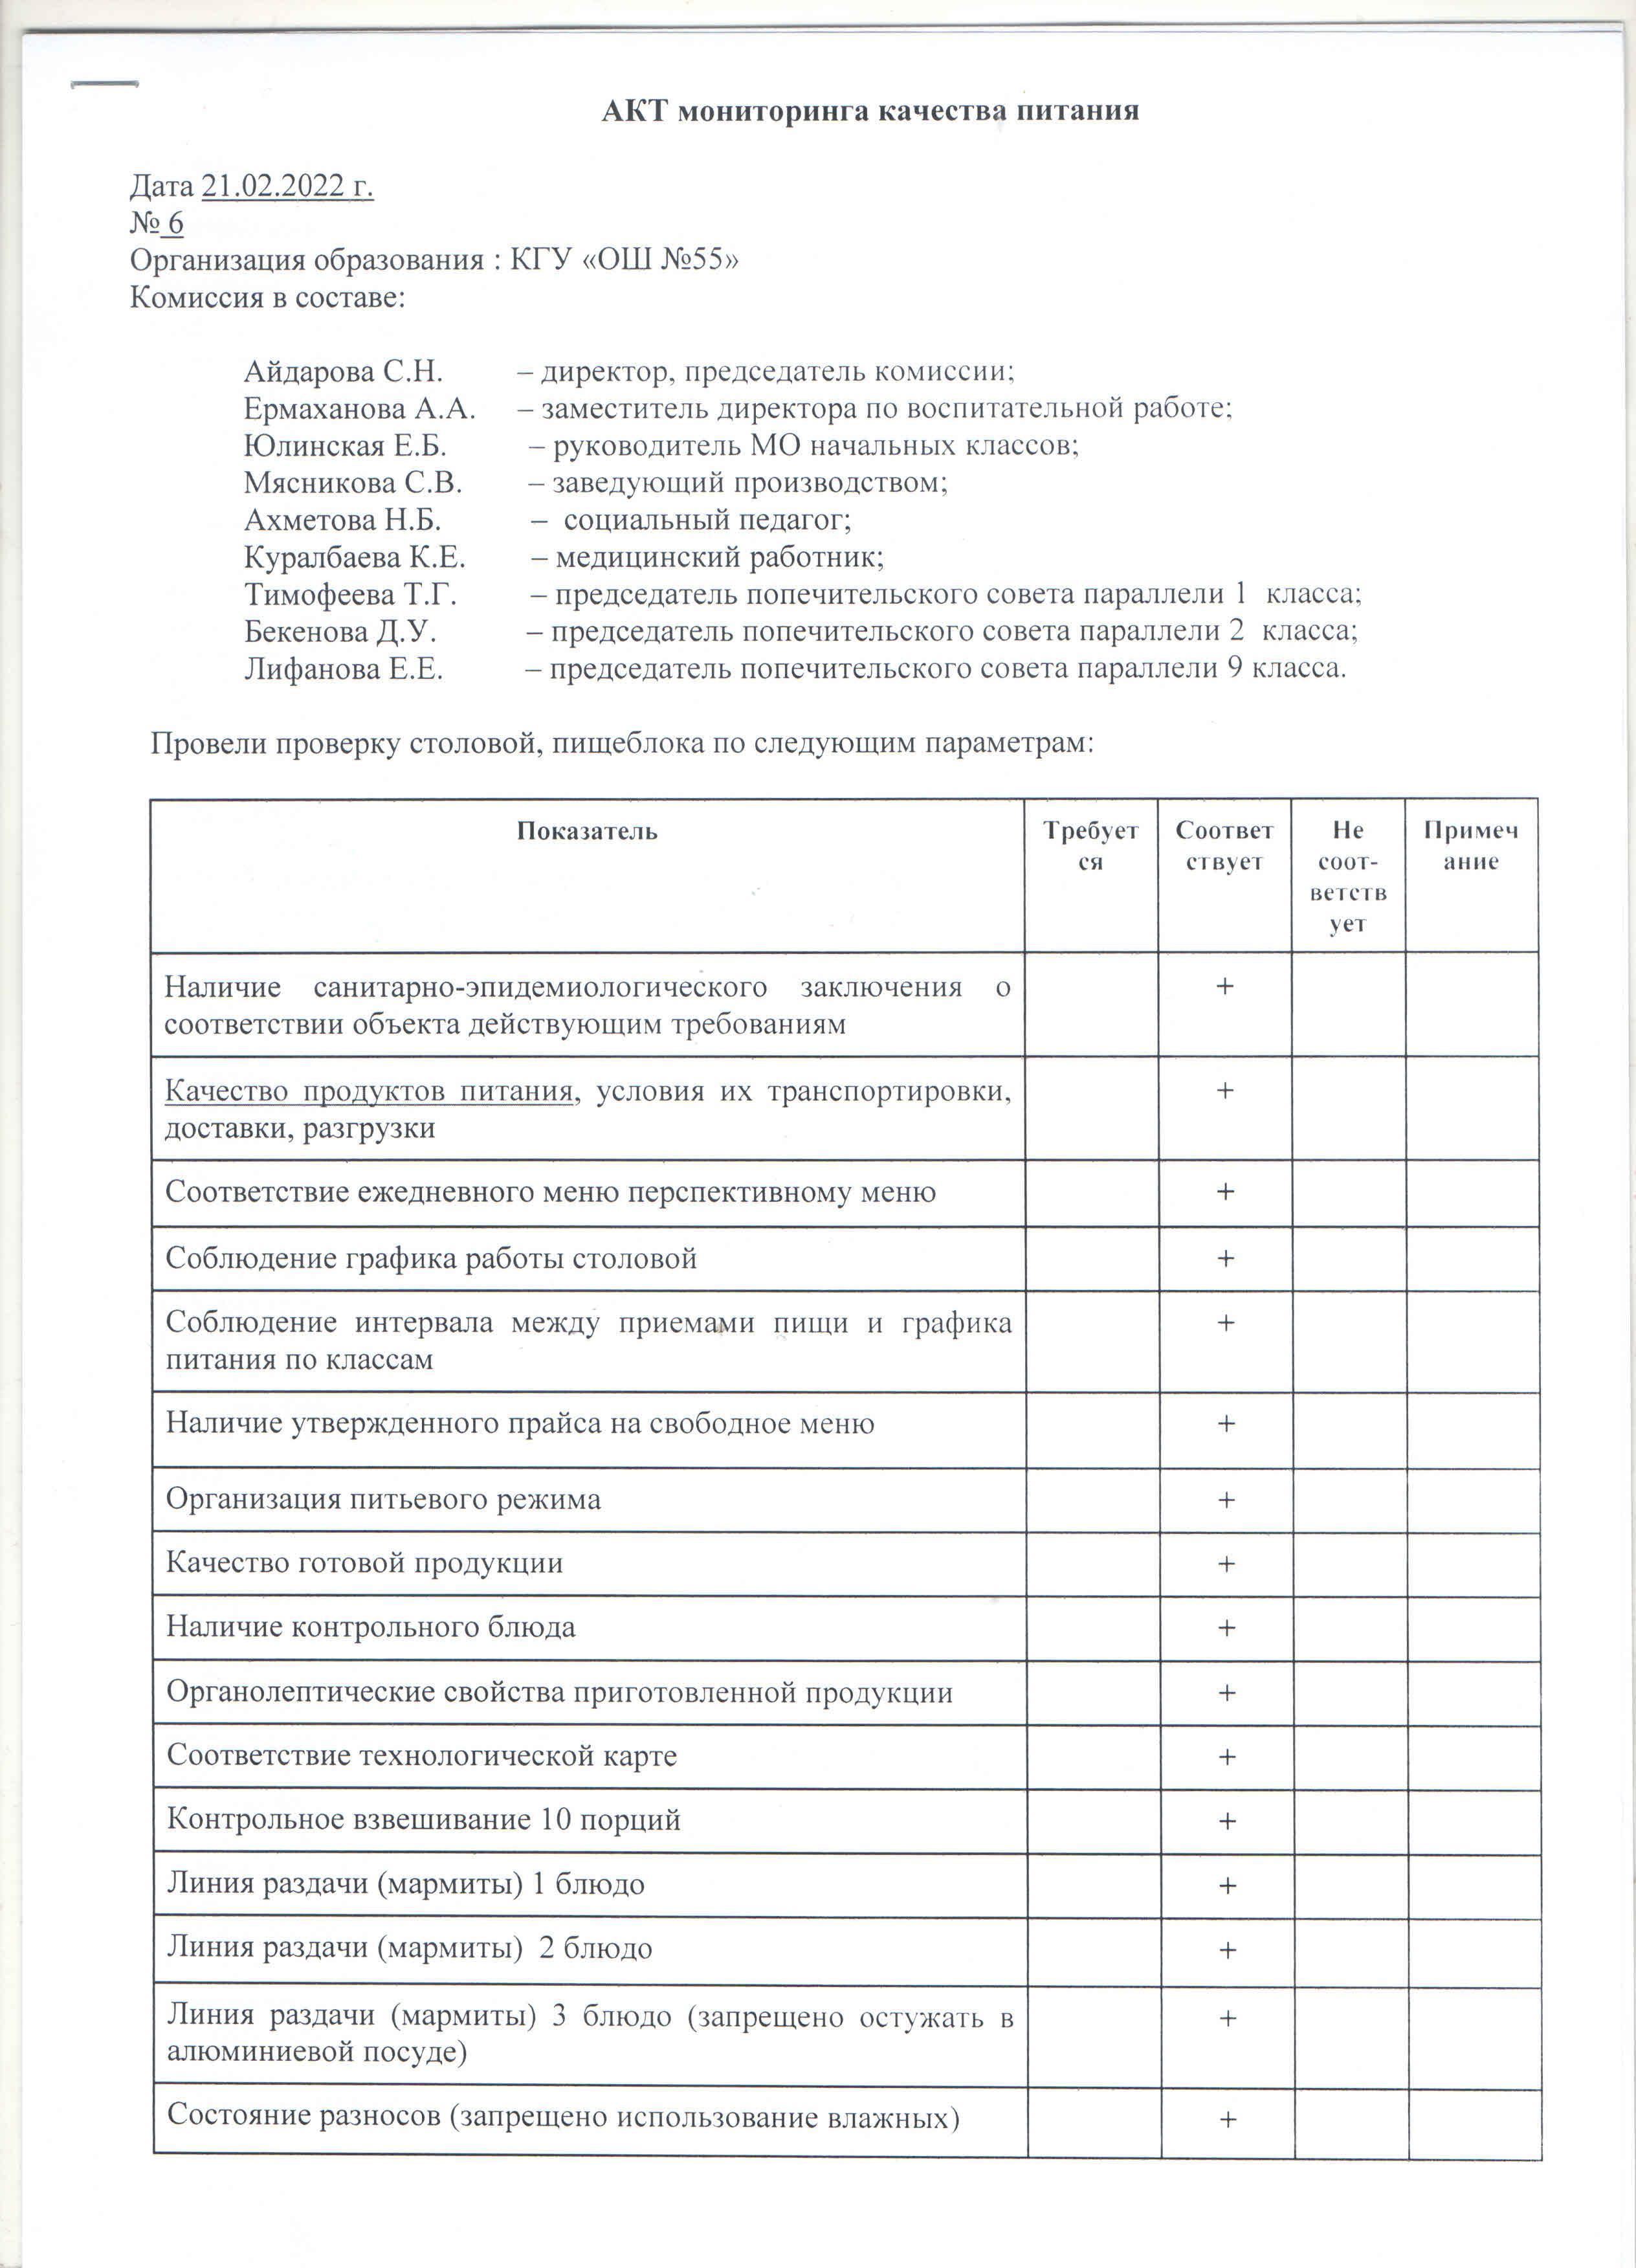 Акт №6 бракеражной комиссии по мониторингу качества питания в столовой КГУ "ОШ №55 от 21.02.2022 г.